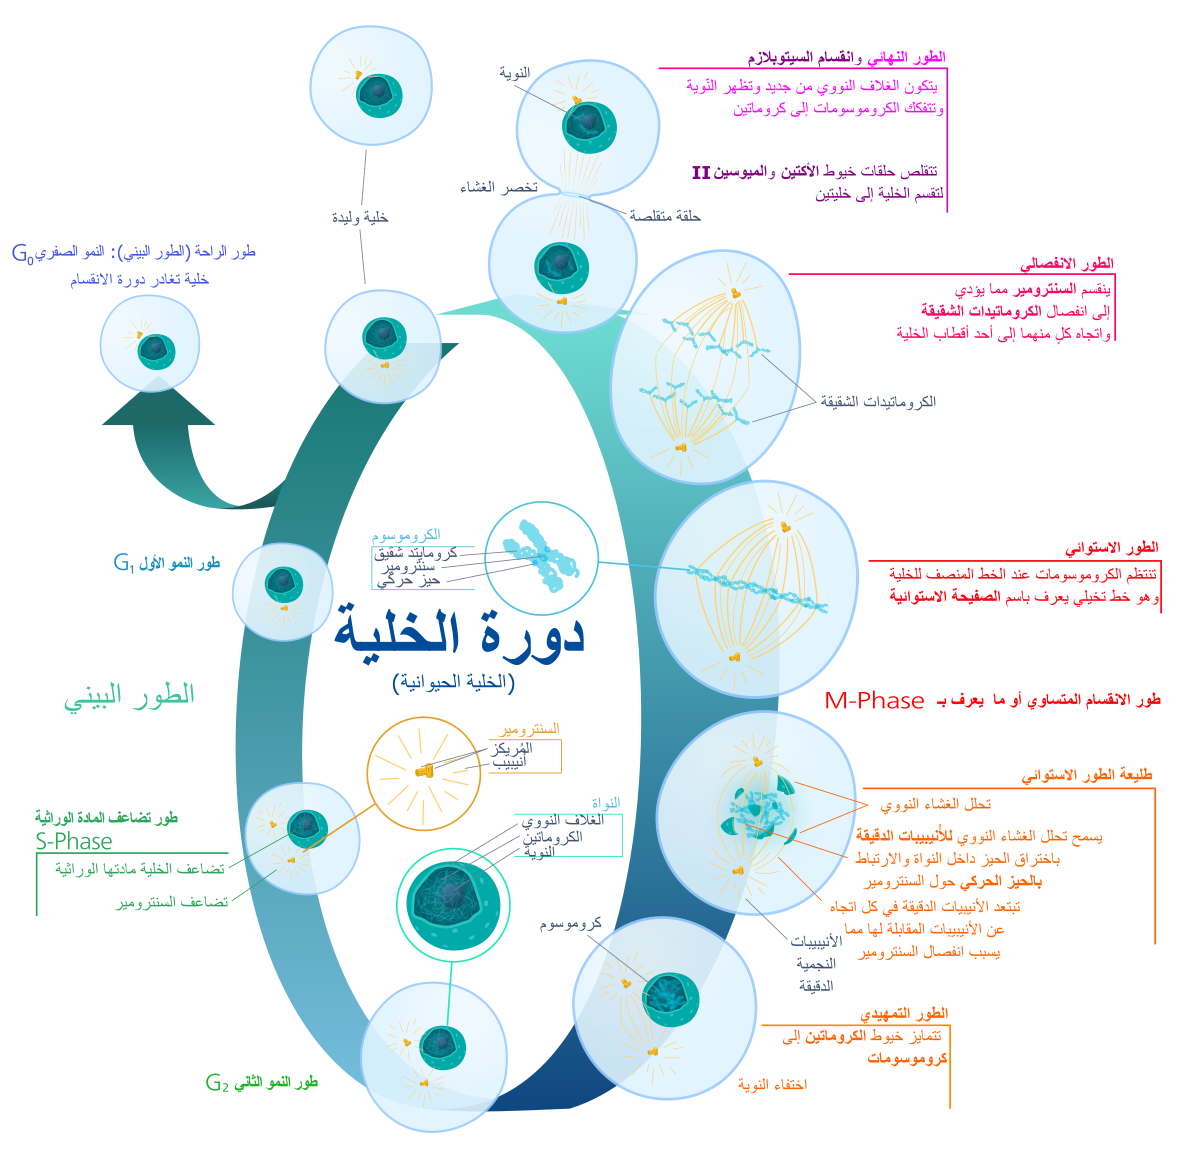 في الطور الاستوائي تصطف الكروماتيدات في وسط الخلية .